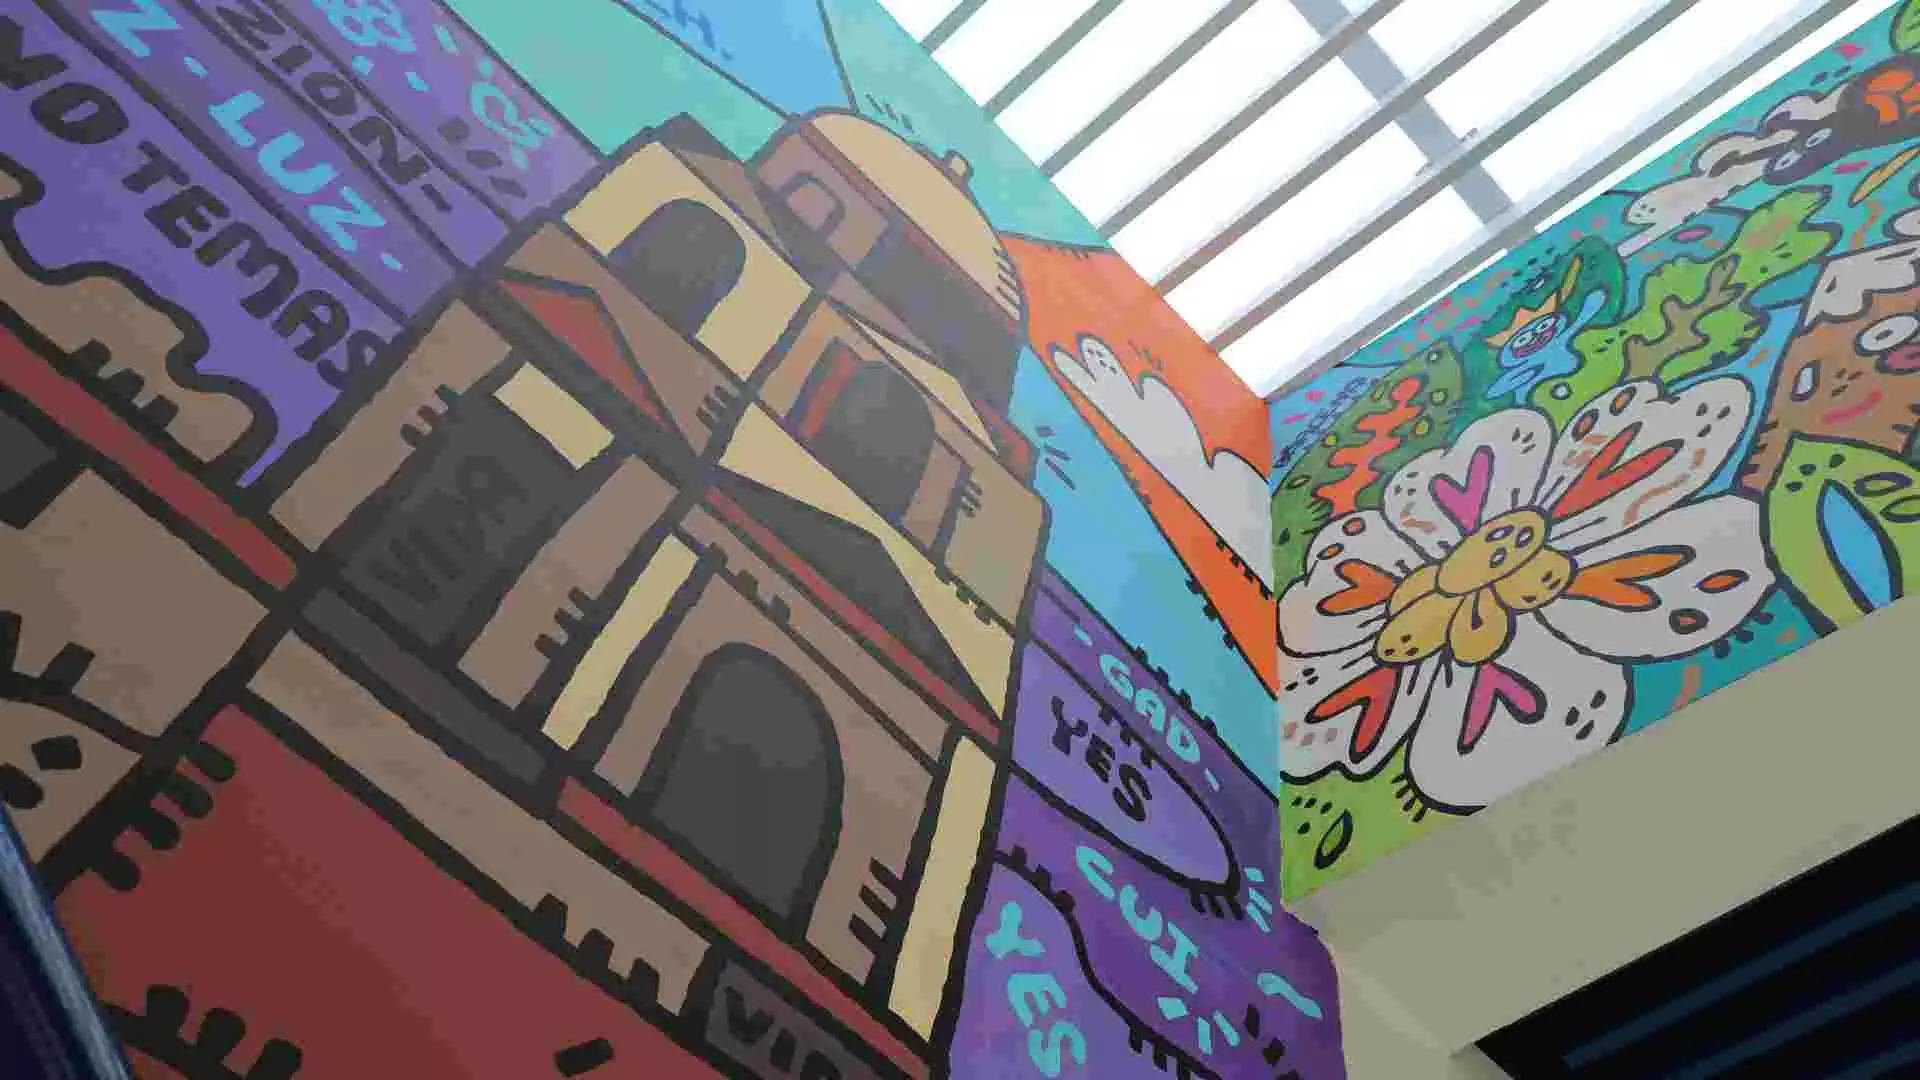 Con este mural, el EXATEC de Animación y Arte Digital busca resplandecer la cultura michoacana a través de ilustraciones coloridas.